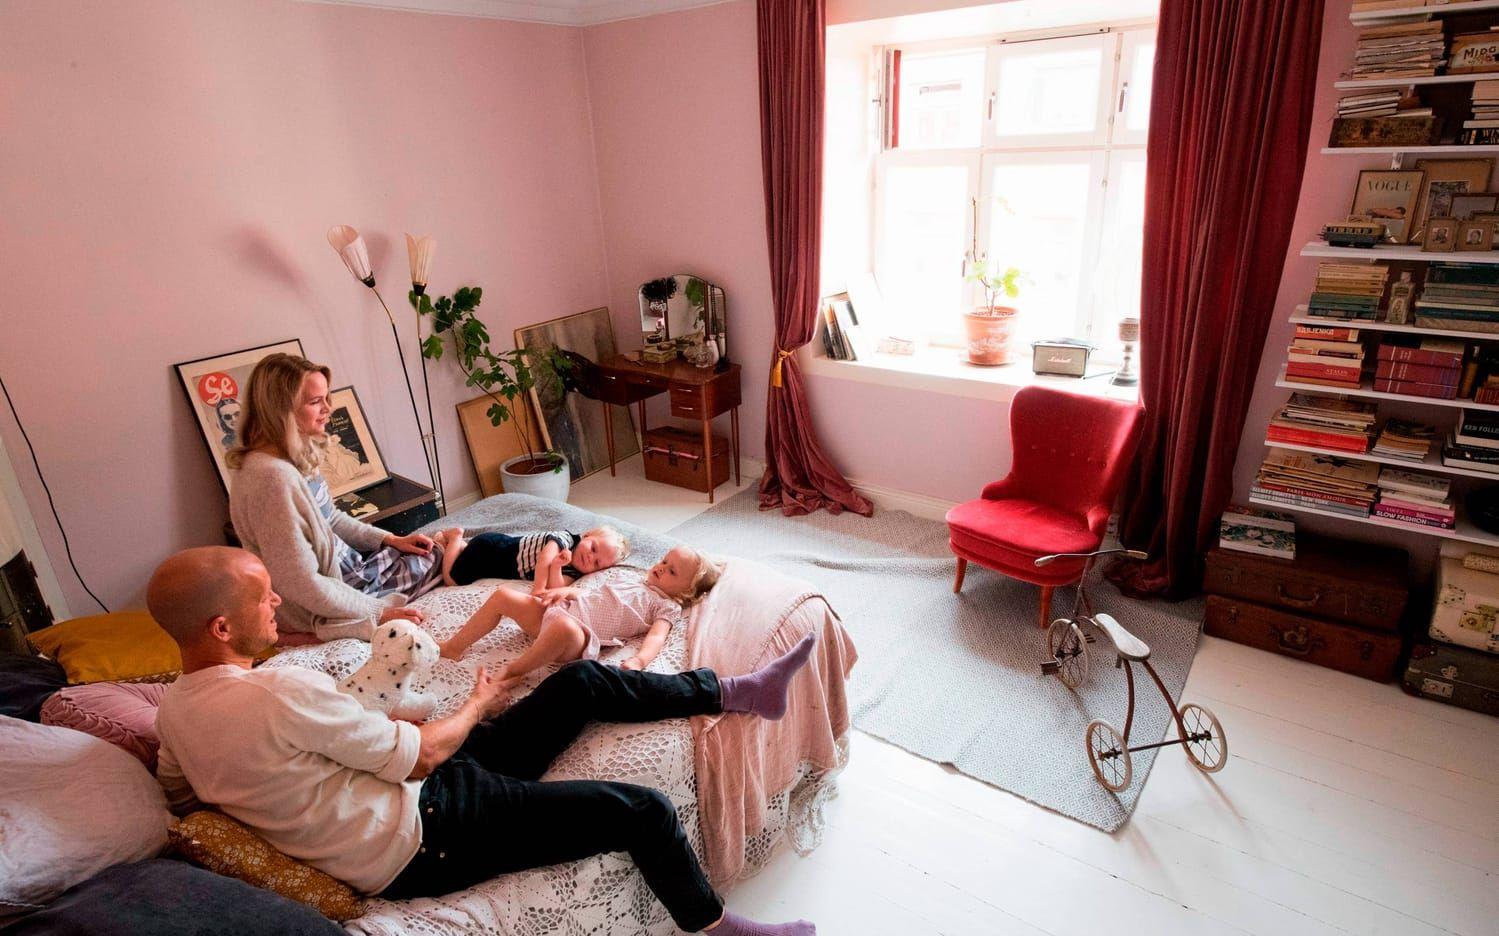 Skippa stora möbler som tar upp mycket väggyta – de tar lätt över och krymper rummet, tipsar Emma och John Sundh. Bilder: Fredrik Sandberg